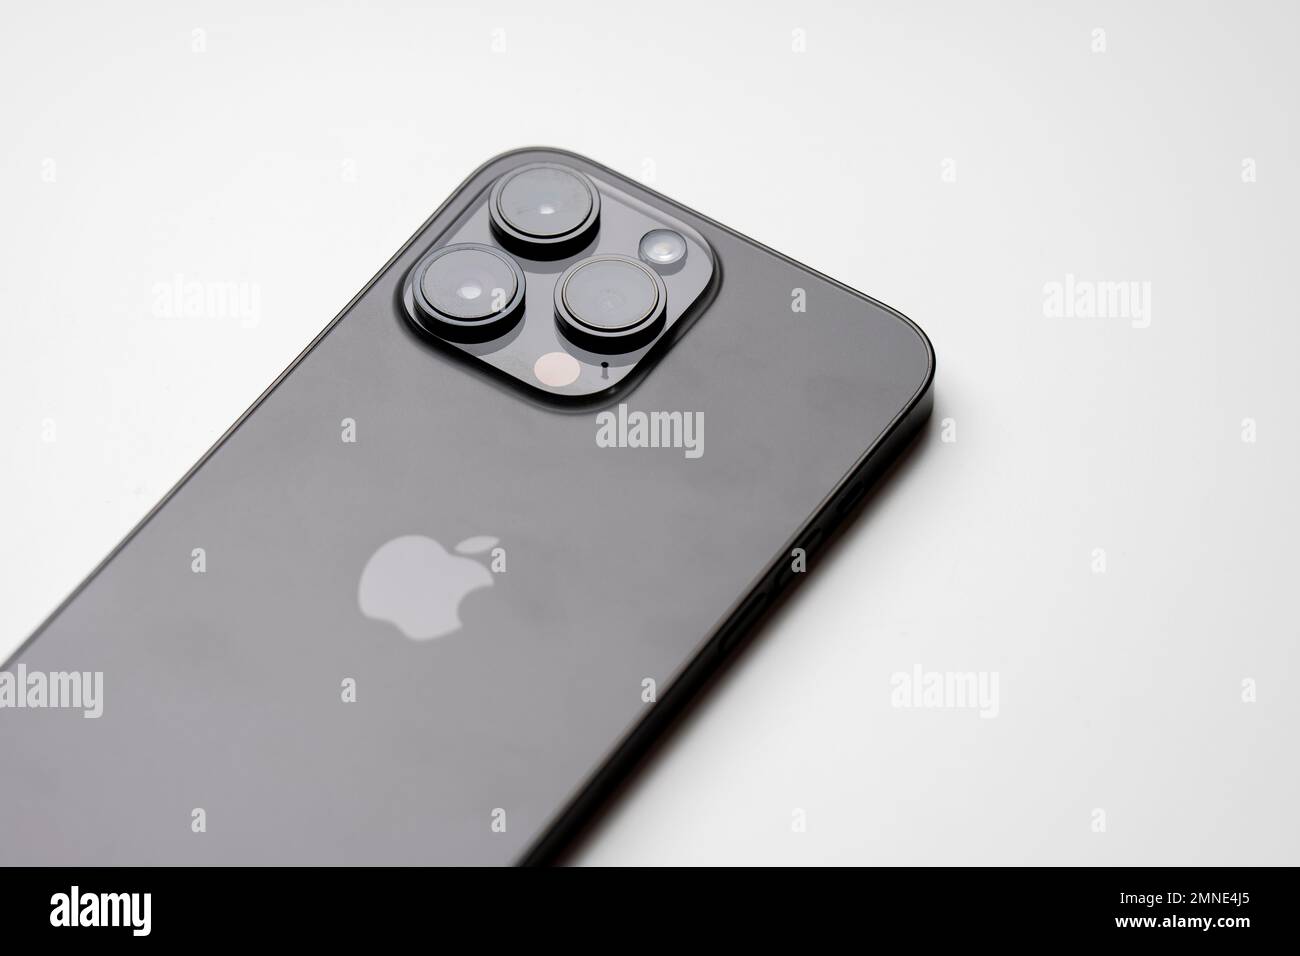 Apple iPhone 14 Pro Max, Noir espace, smartphone avec 3 appareils photo,  déballé, isolé sur fond blanc. Sélectionnez Photo Stock - Alamy